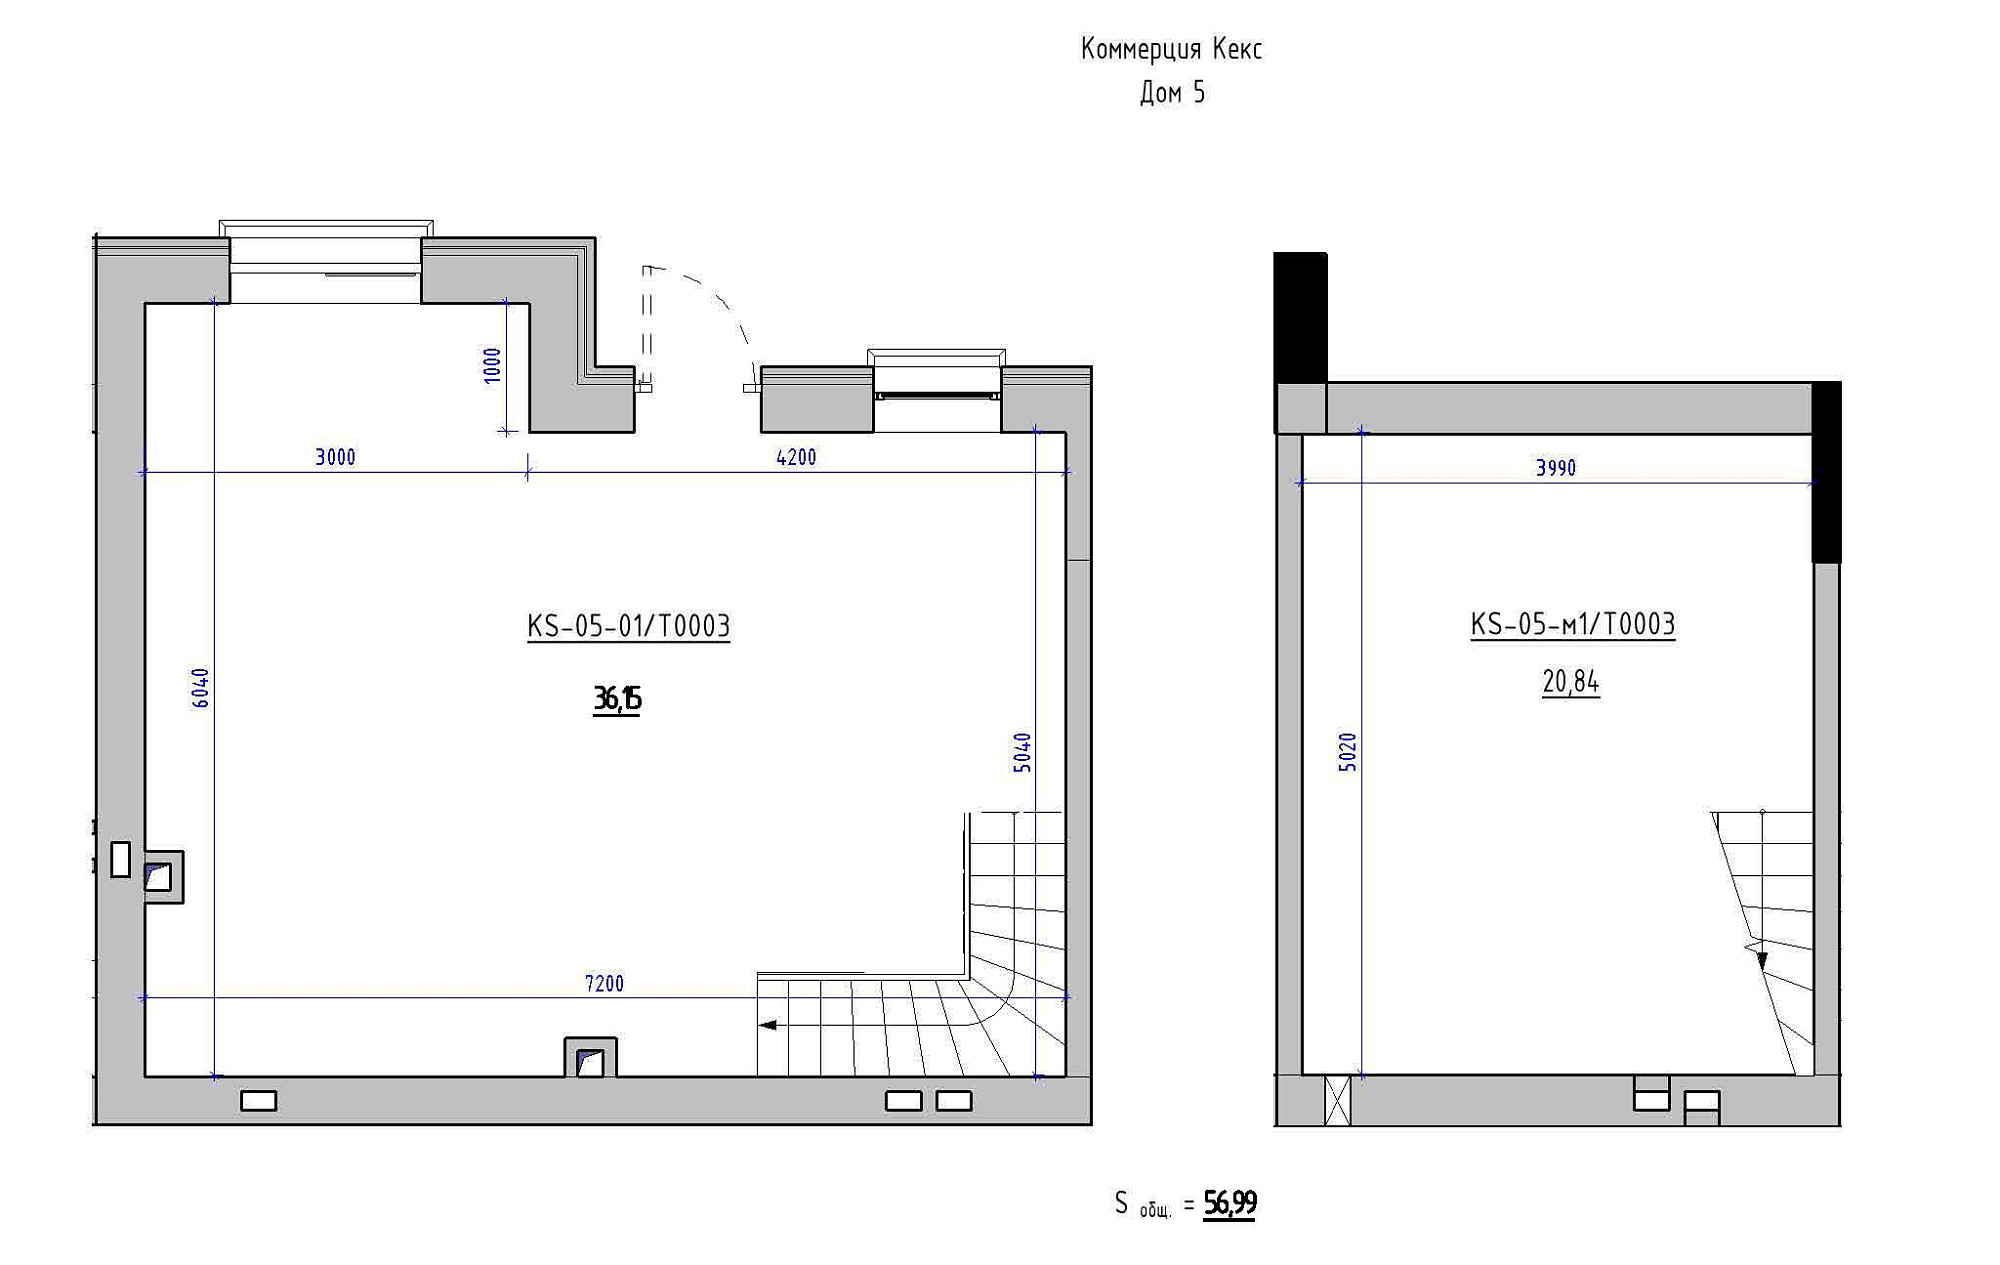 Planning Commercial premises area 56.99m2, KS-005-01/Т003.